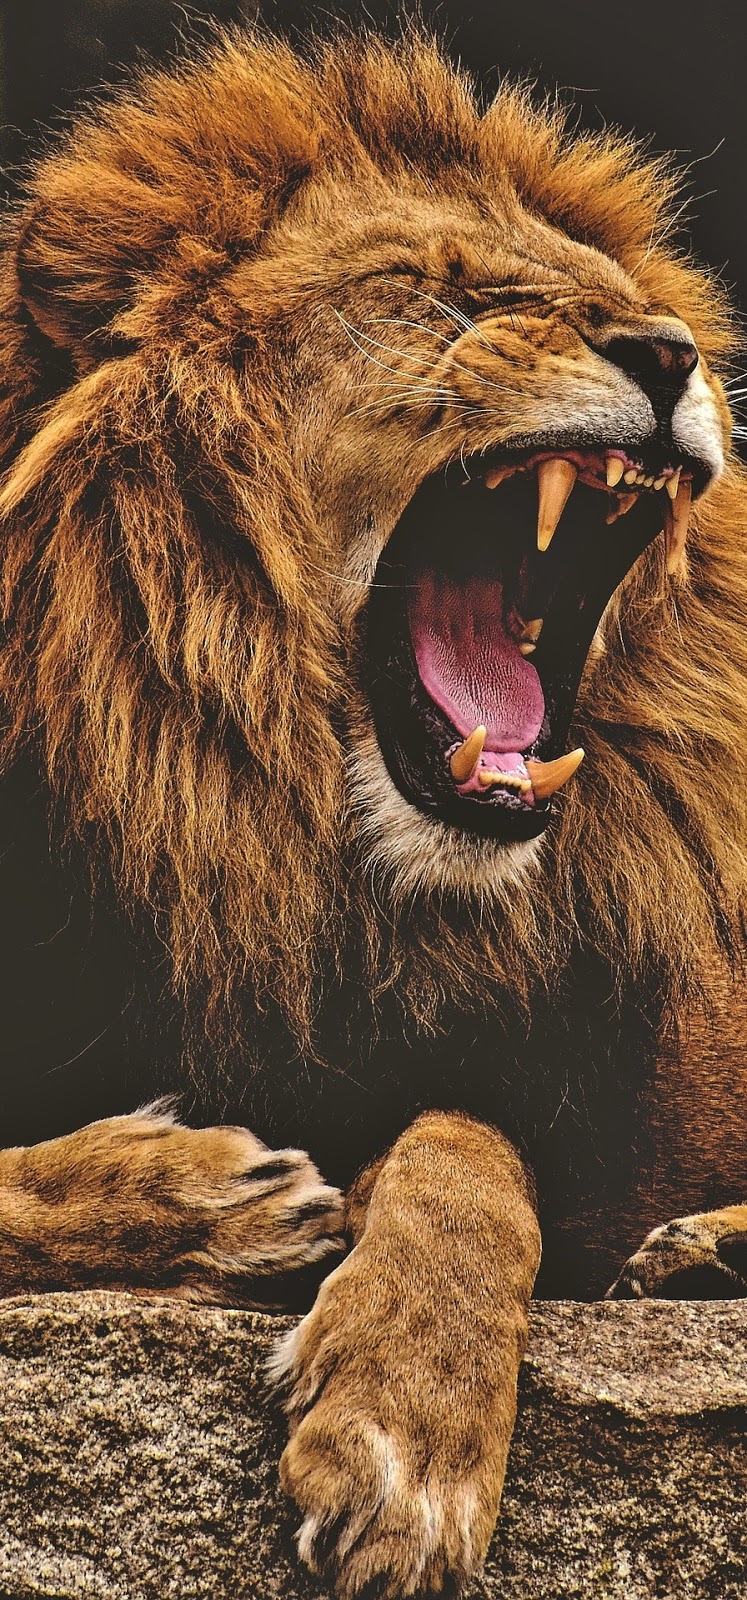 The majestic roar of a lion.